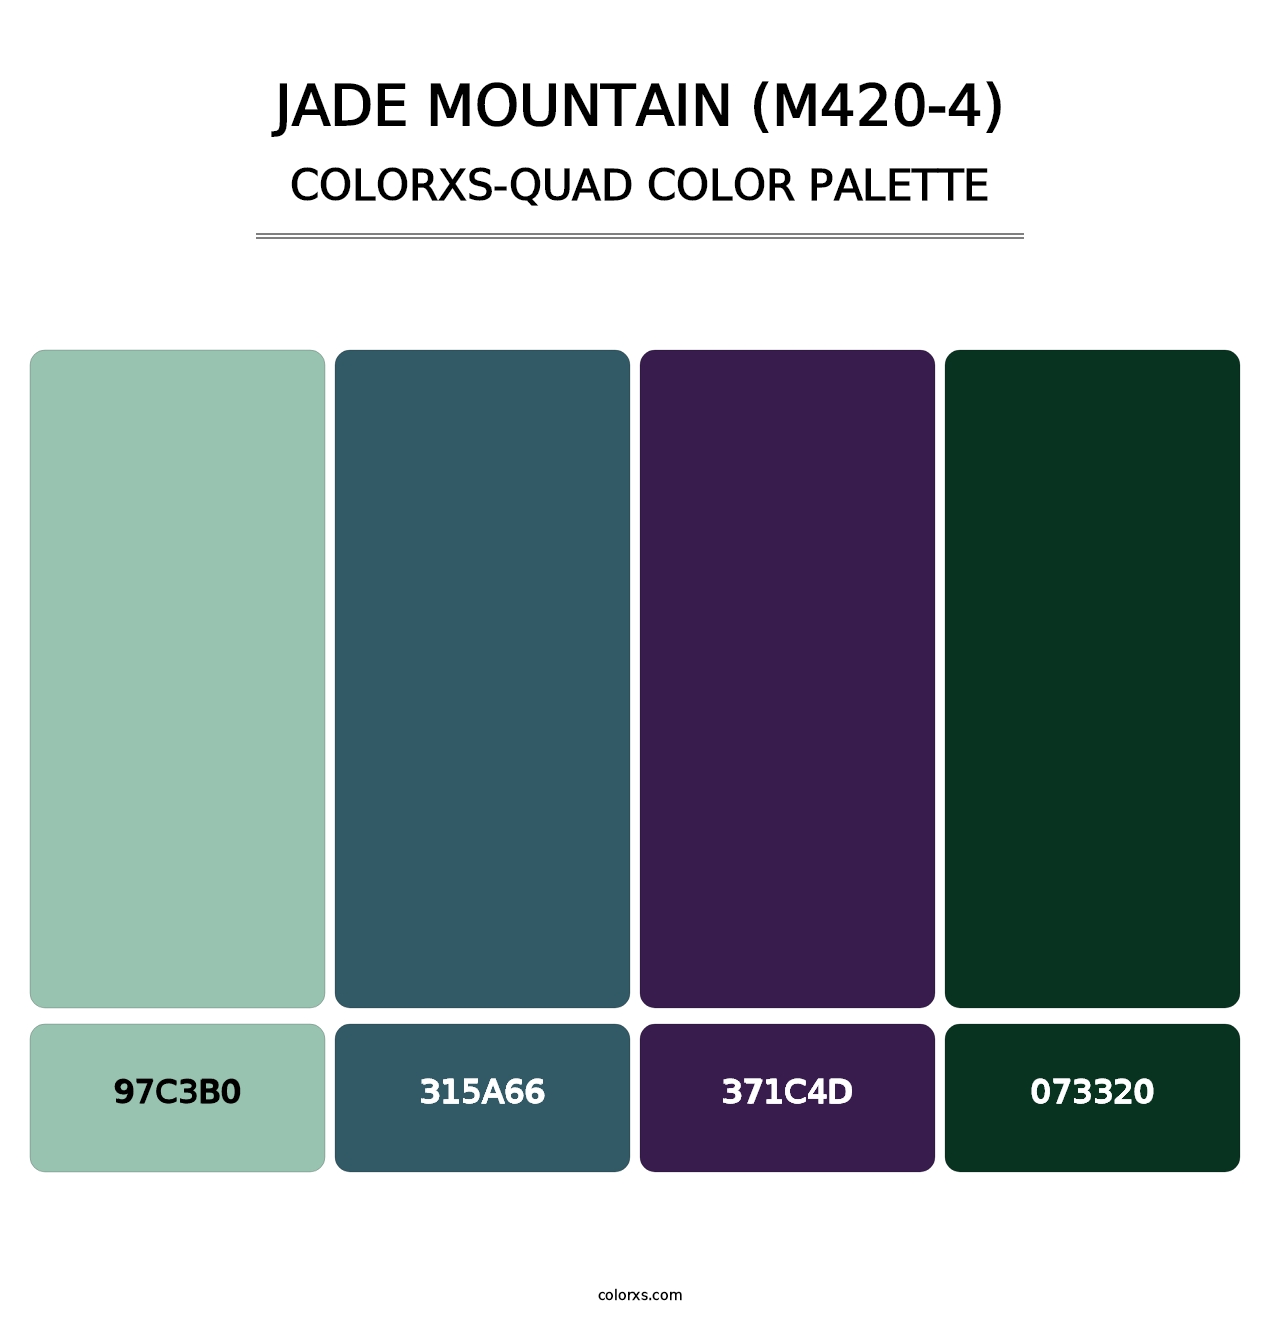 Jade Mountain (M420-4) - Colorxs Quad Palette